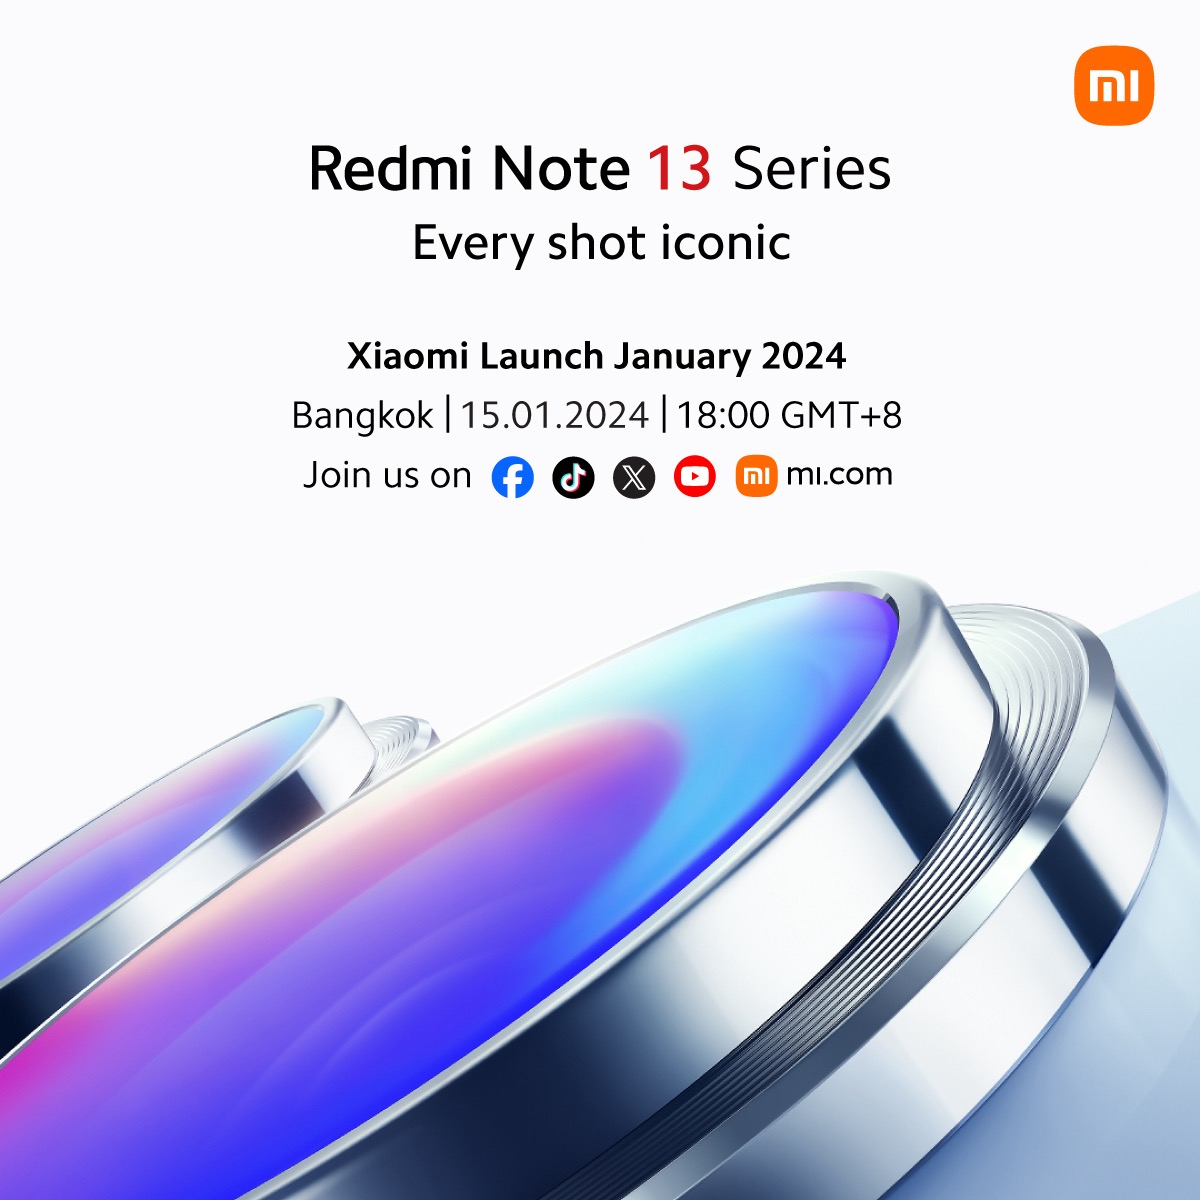 Redmi Note 13 Pro Plus Price in Malaysia & Specs - RM1269